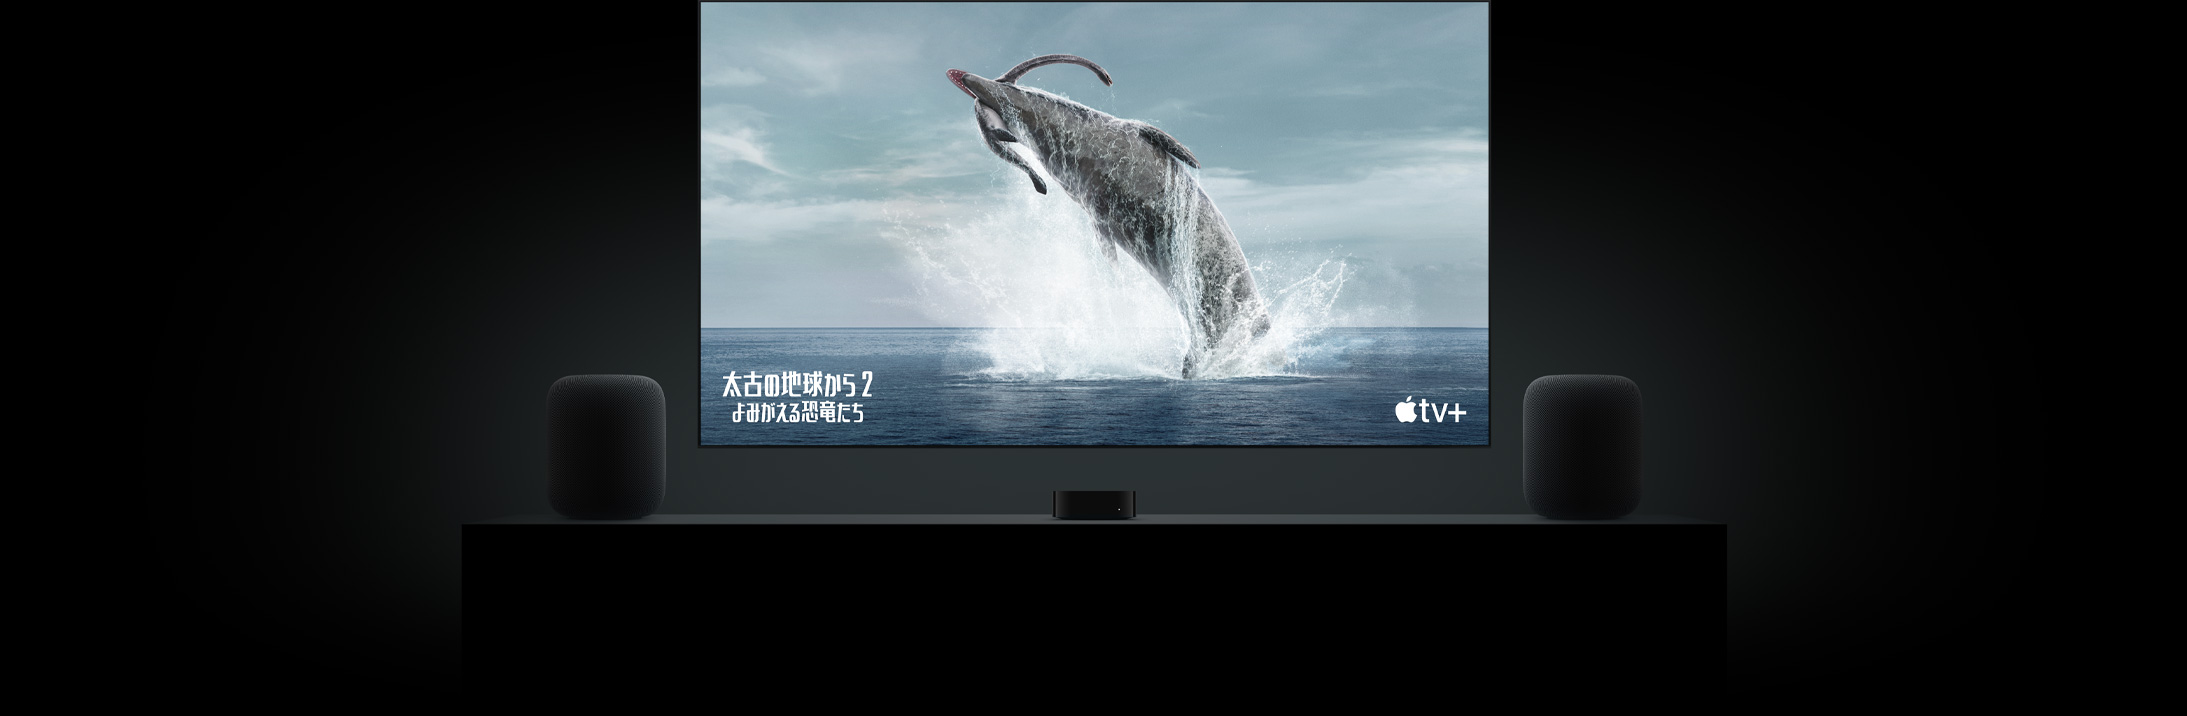 フラットテレビの大きなスクリーン上に「太古の地球から〜よみがえる恐竜たち〜」の恐竜の鮮明な映像が映し出されている。リビングルームのキャビネットの上に置かれた2台のHomePodスピーカー。その間にApple TVが配置され、その上にテレビが掛けられている